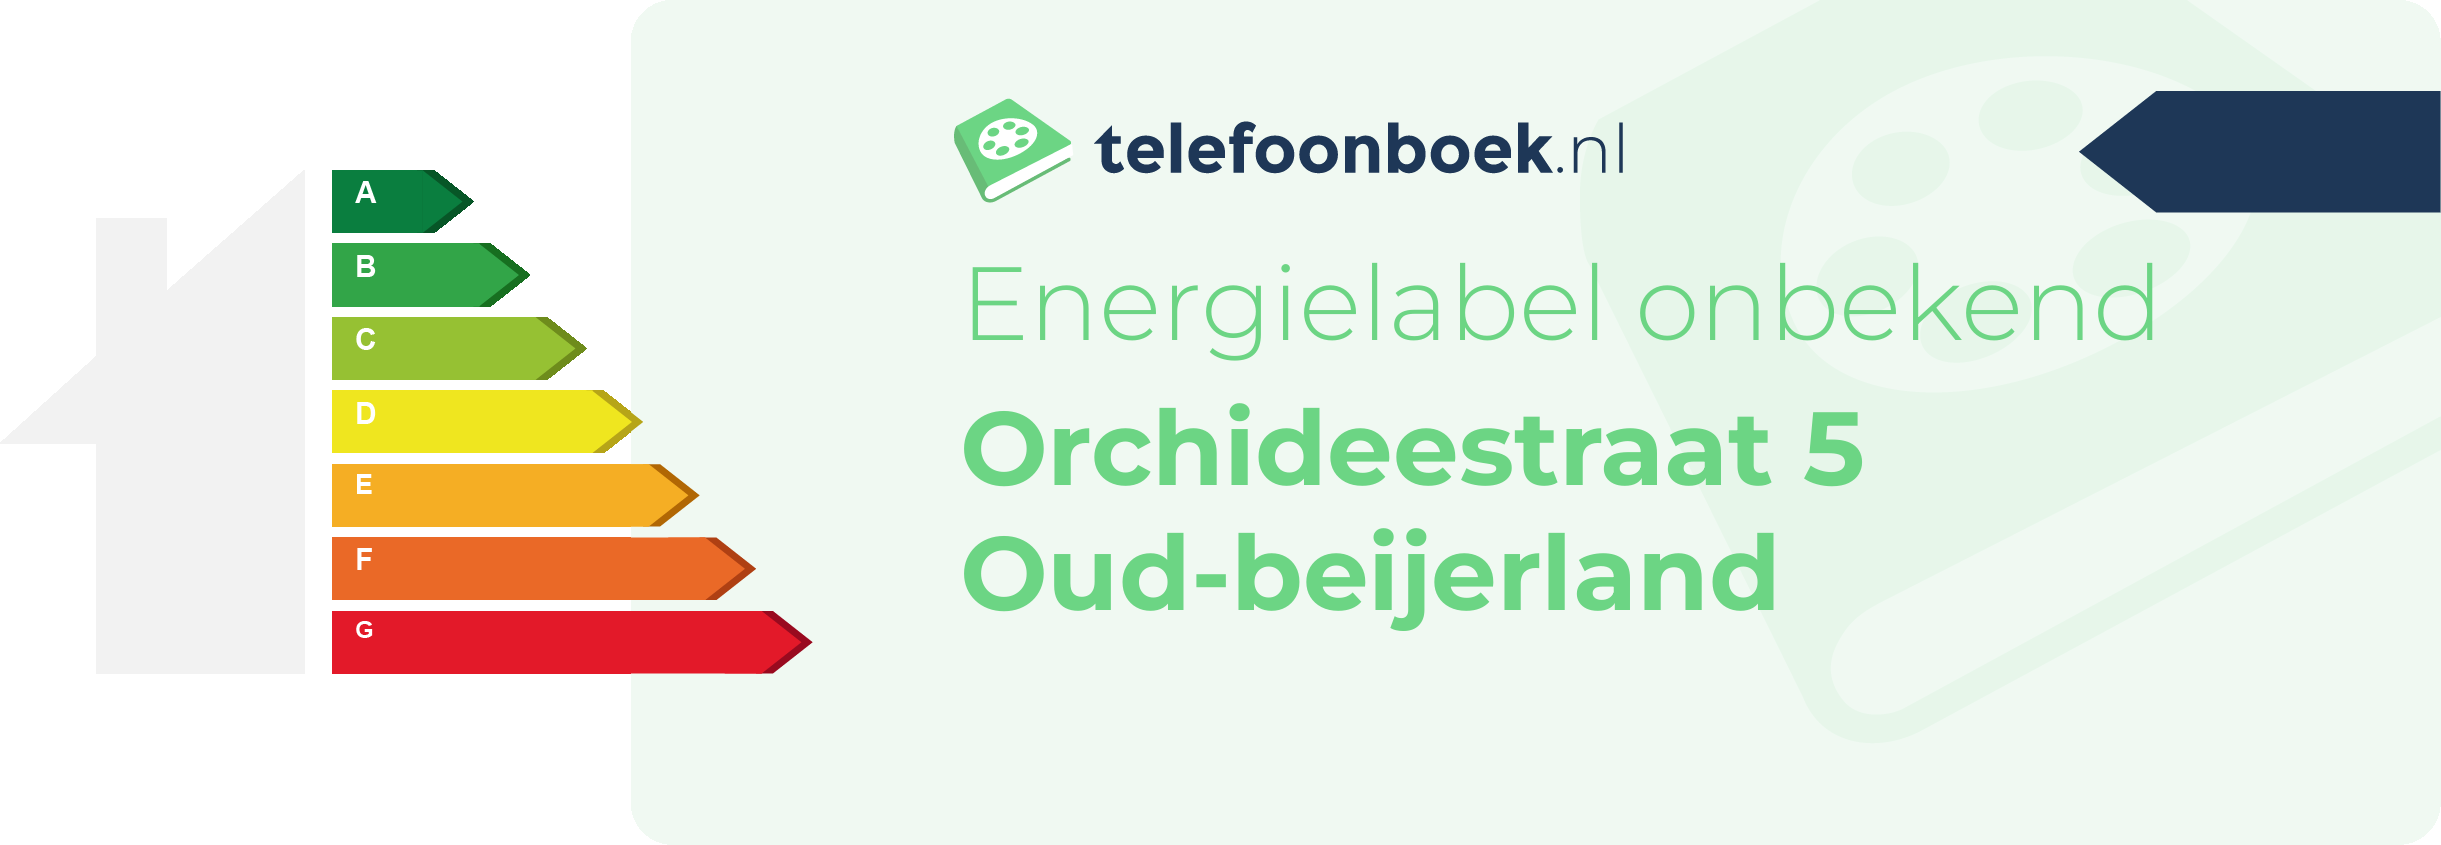 Energielabel Orchideestraat 5 Oud-Beijerland